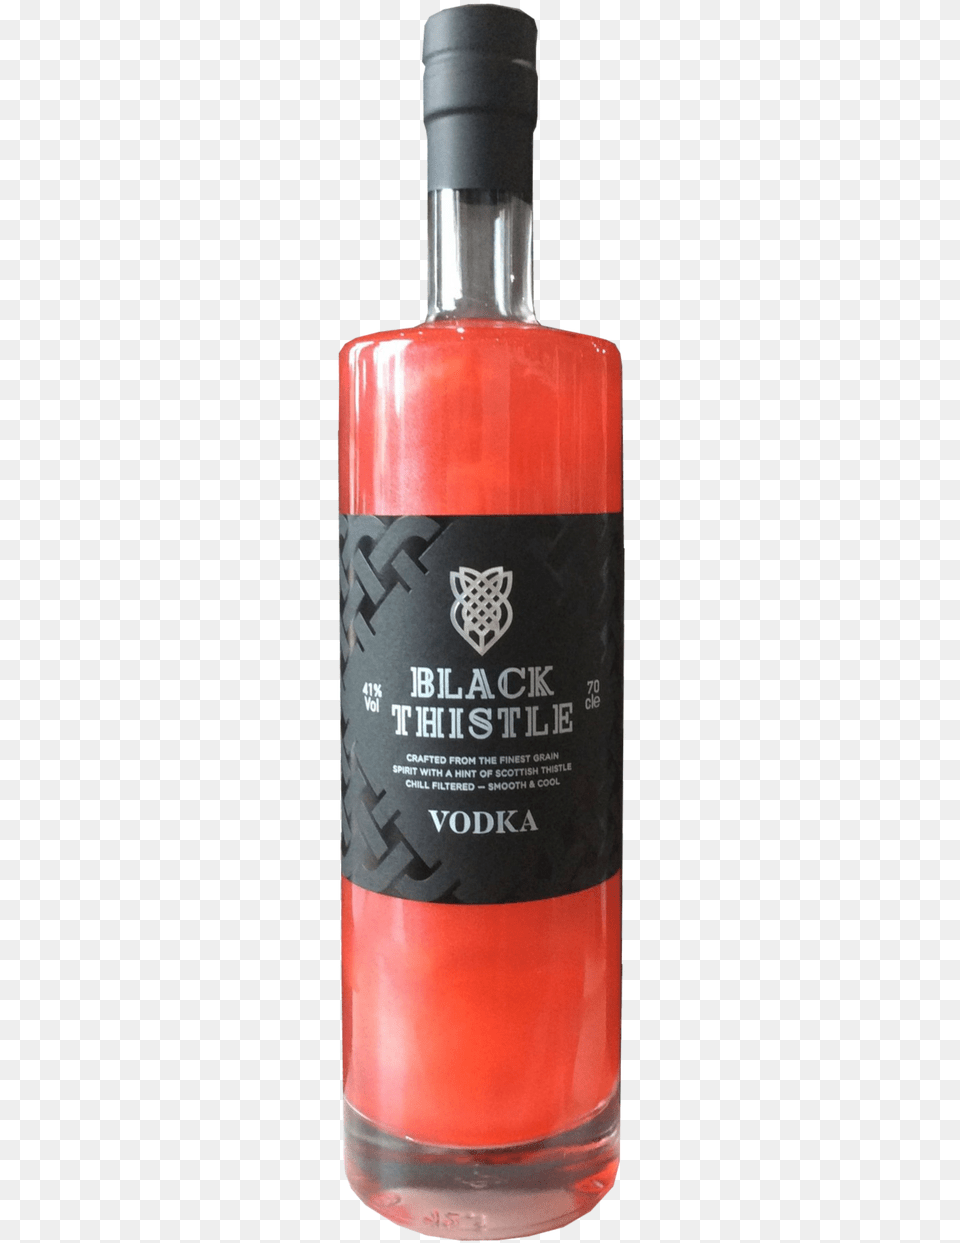 Black Thistle Red Mist Vodka Bottle, Absinthe, Alcohol, Beverage, Liquor Png Image